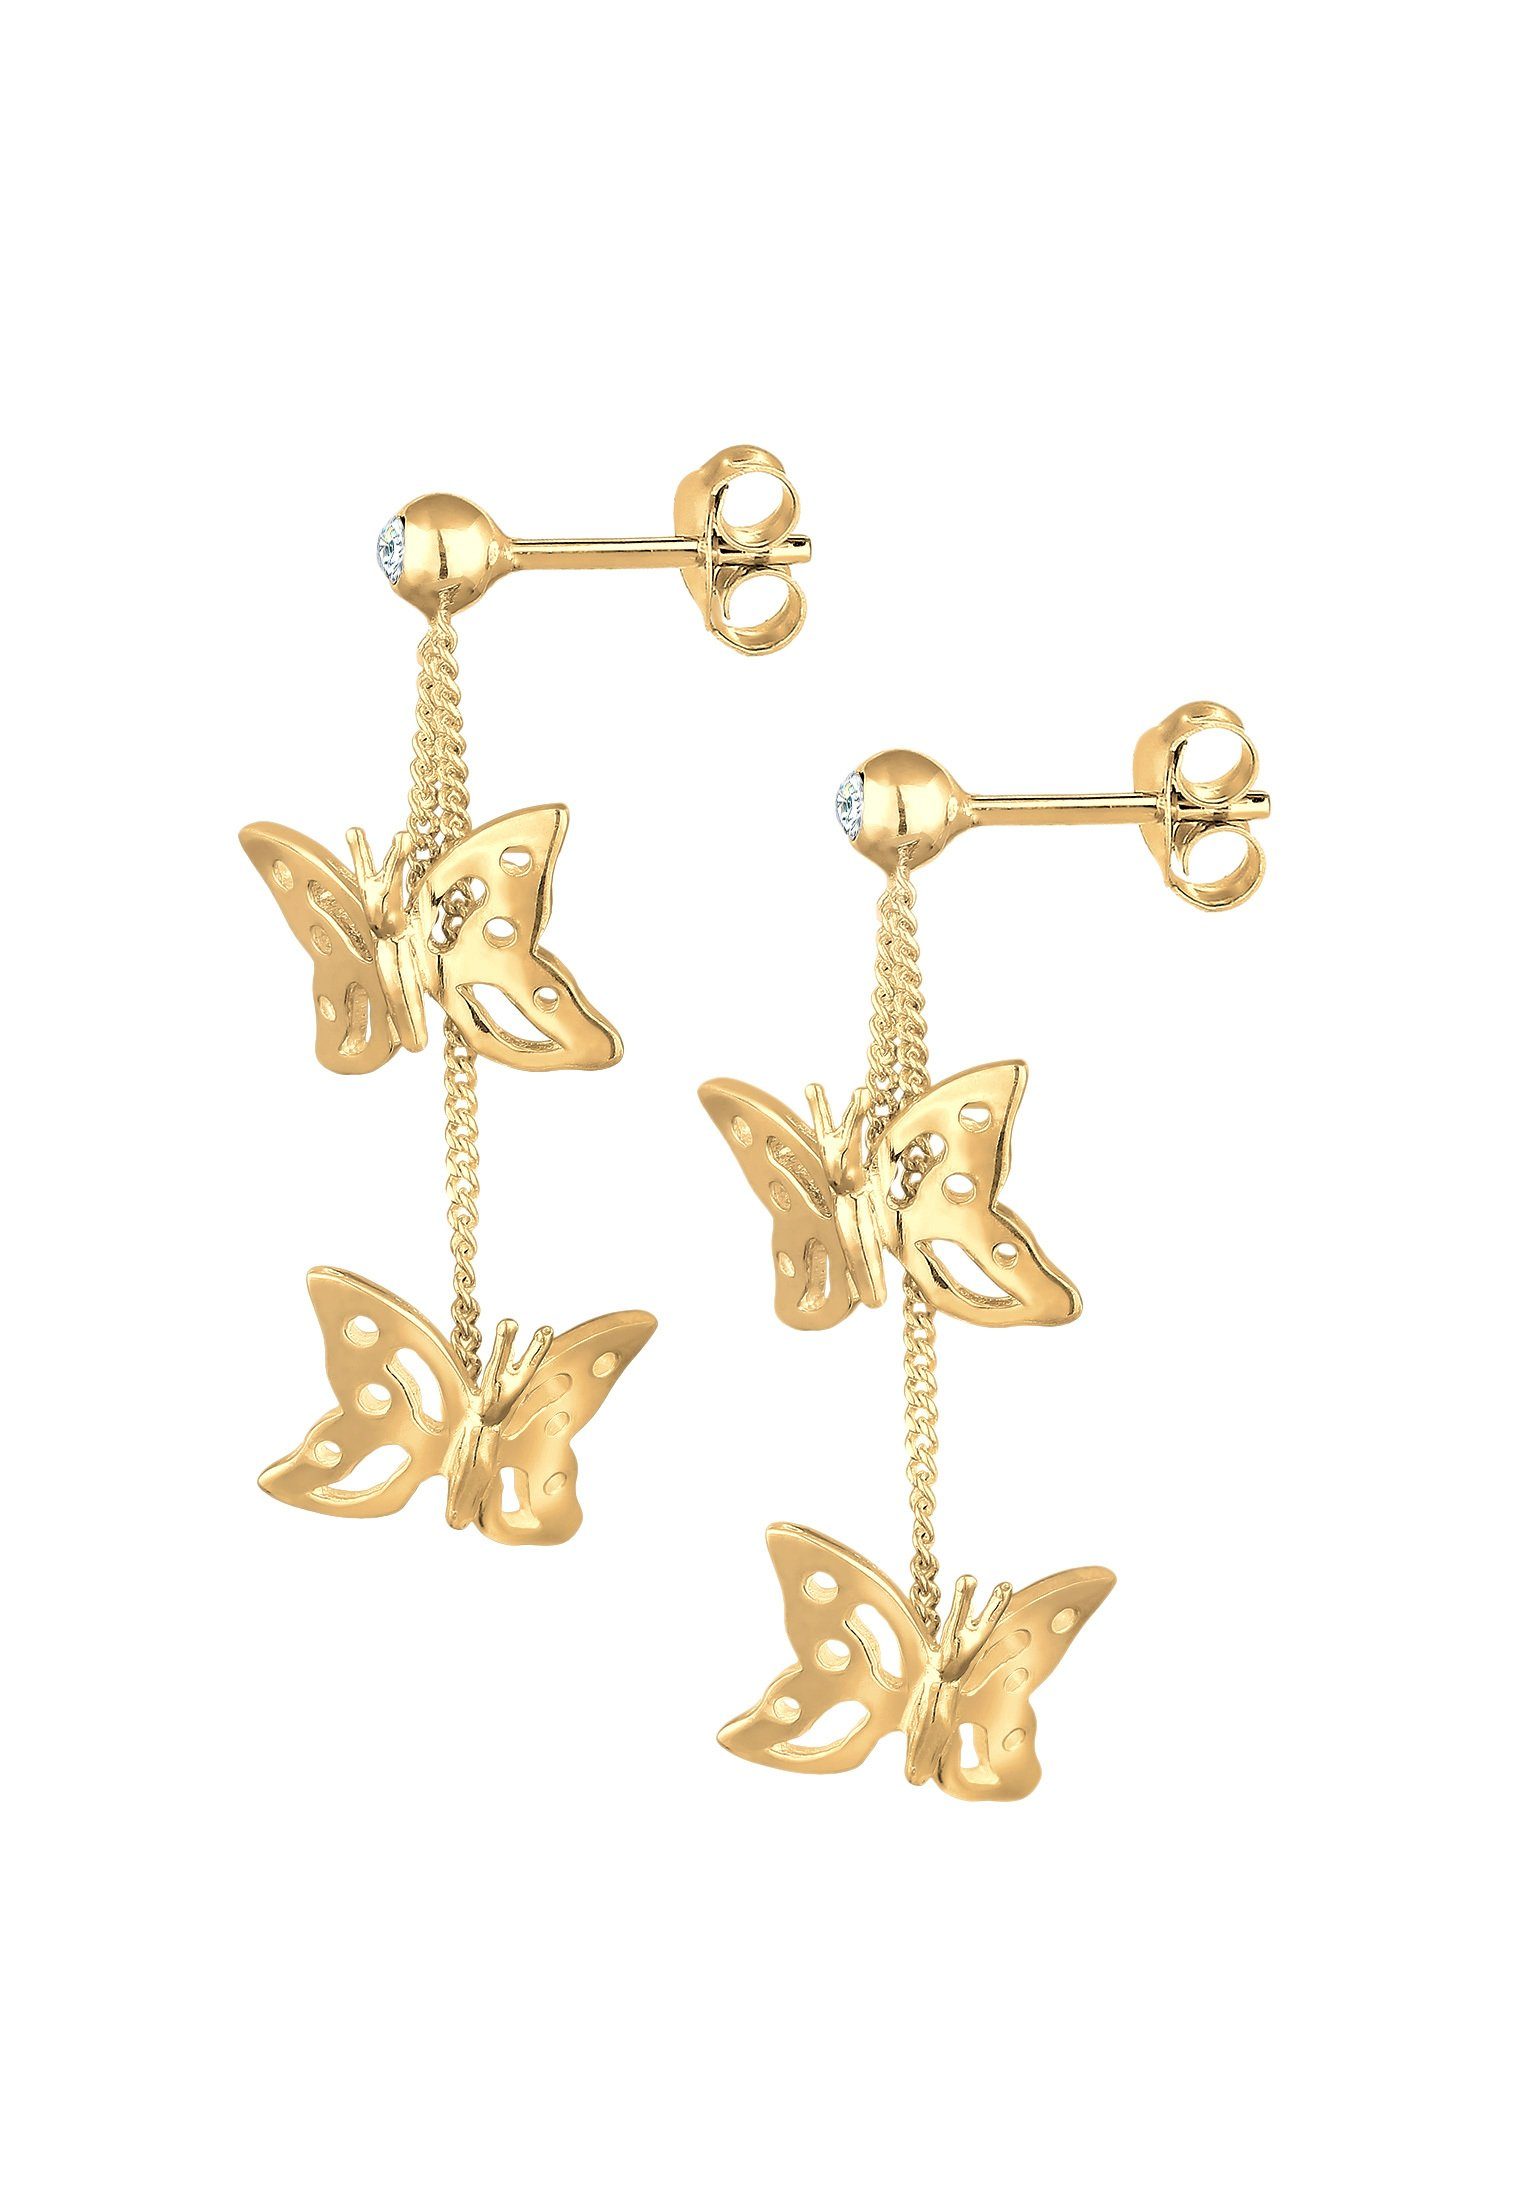 Silber Schmetterling Elli Natur Gold Paar 925, Ohrhänger Schmetterling Kristalle